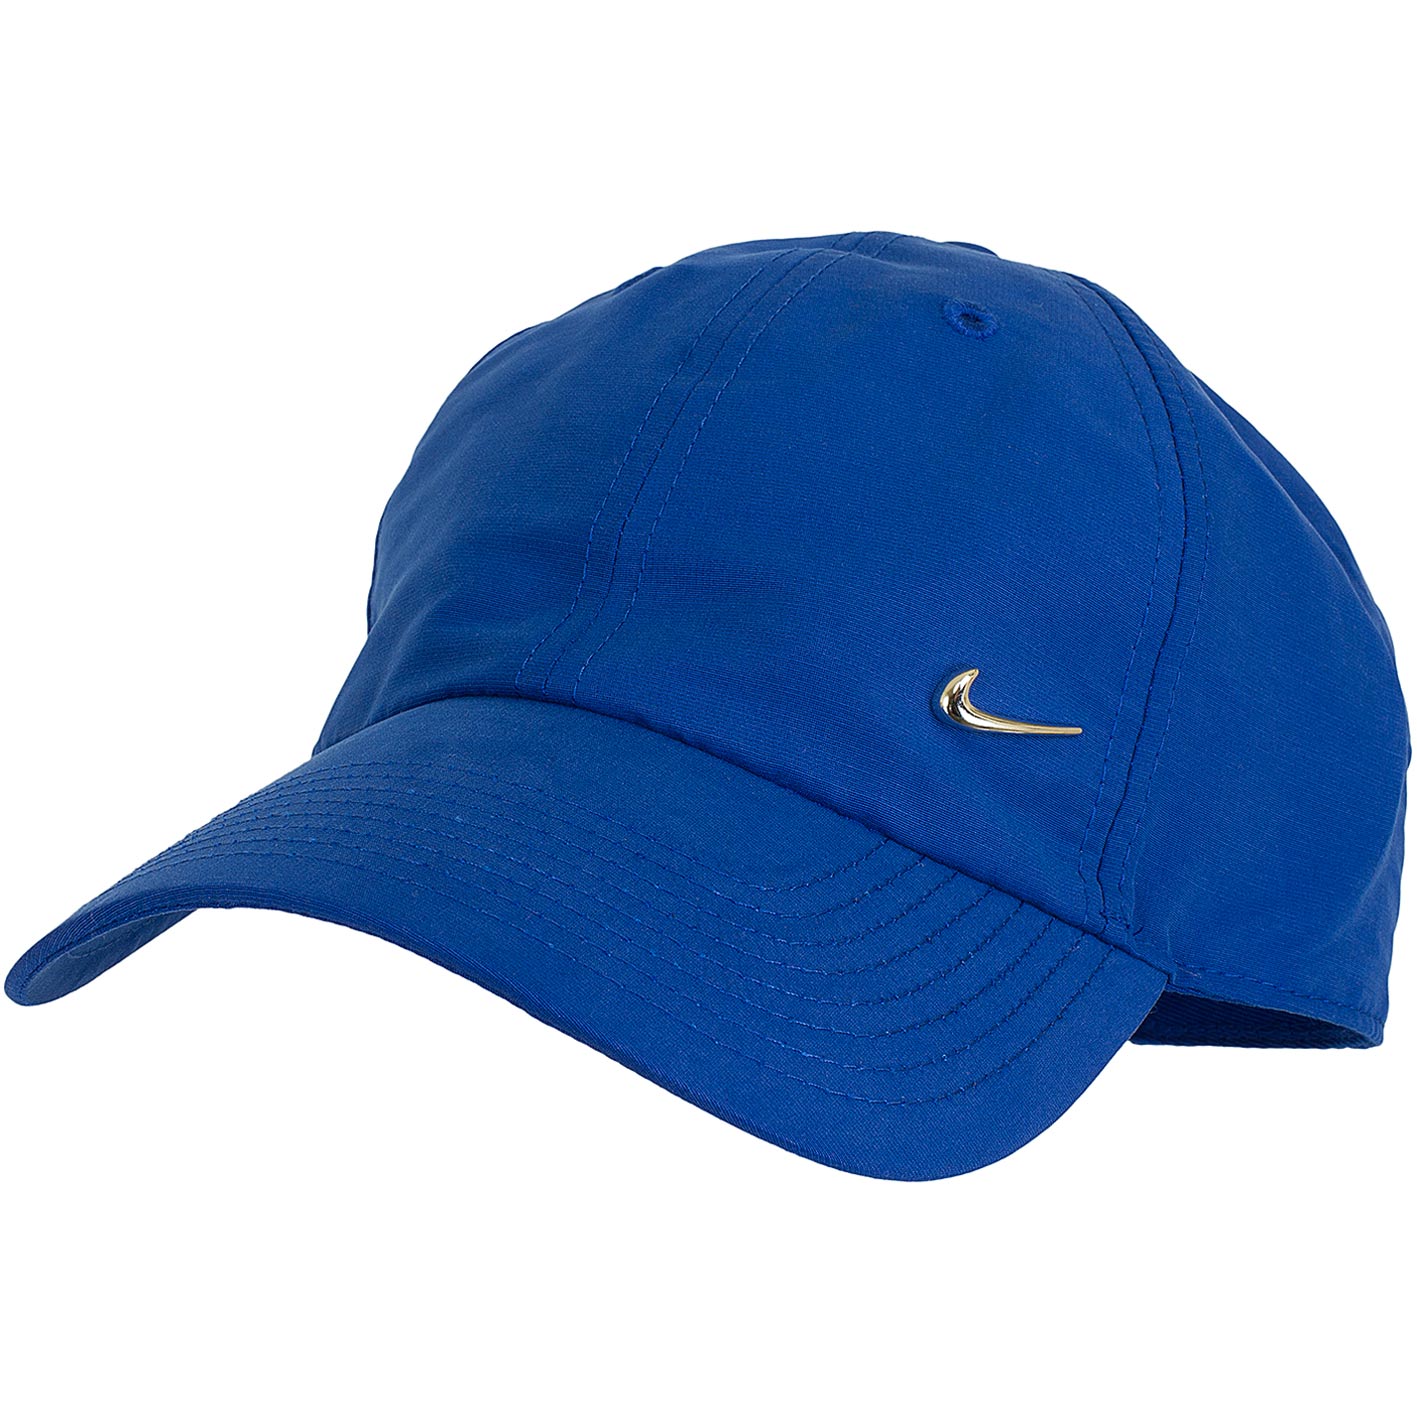 ☆ Nike Snapback Cap H86 Metal Swoosh blau/silber - hier bestellen!